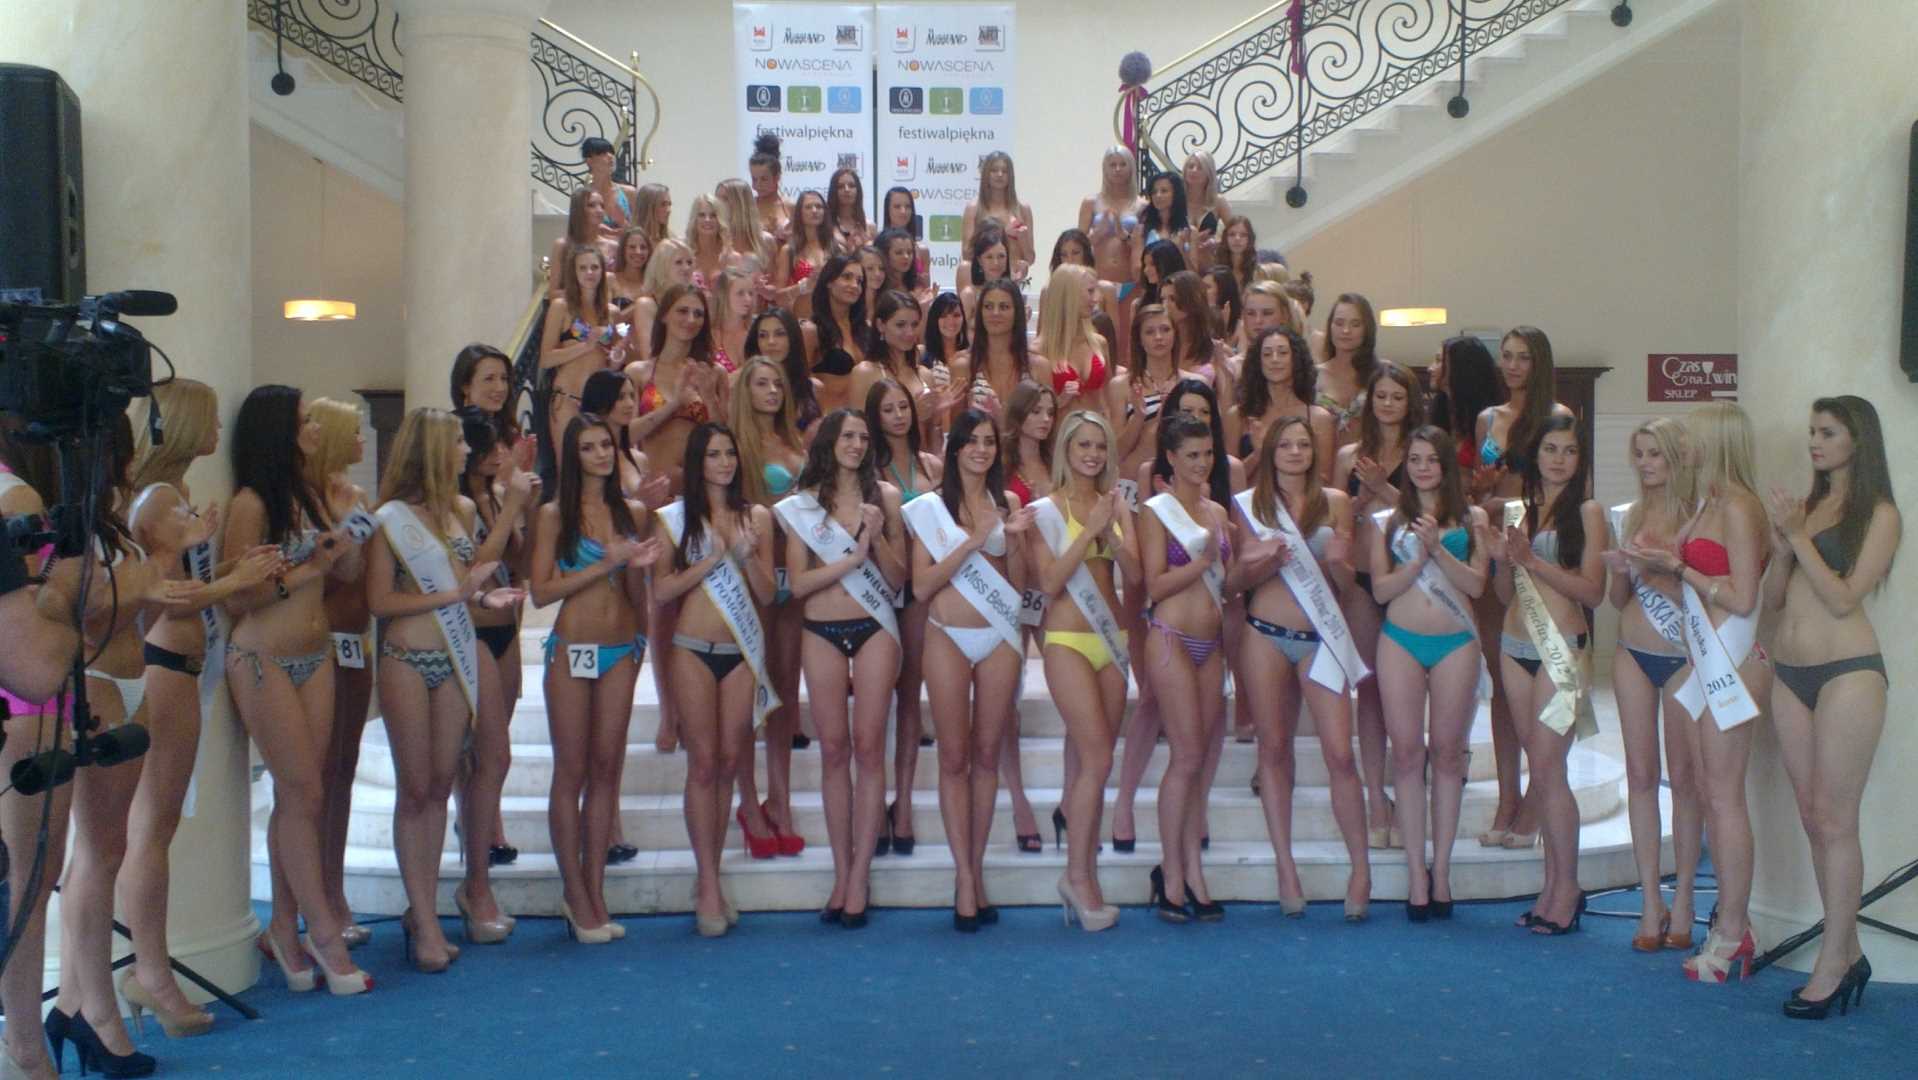 , Miss Warmii i Mazur 2012 w ćwierćfinale Miss Polski, Miss Warmii i Mazur, Miss Warmii i Mazur